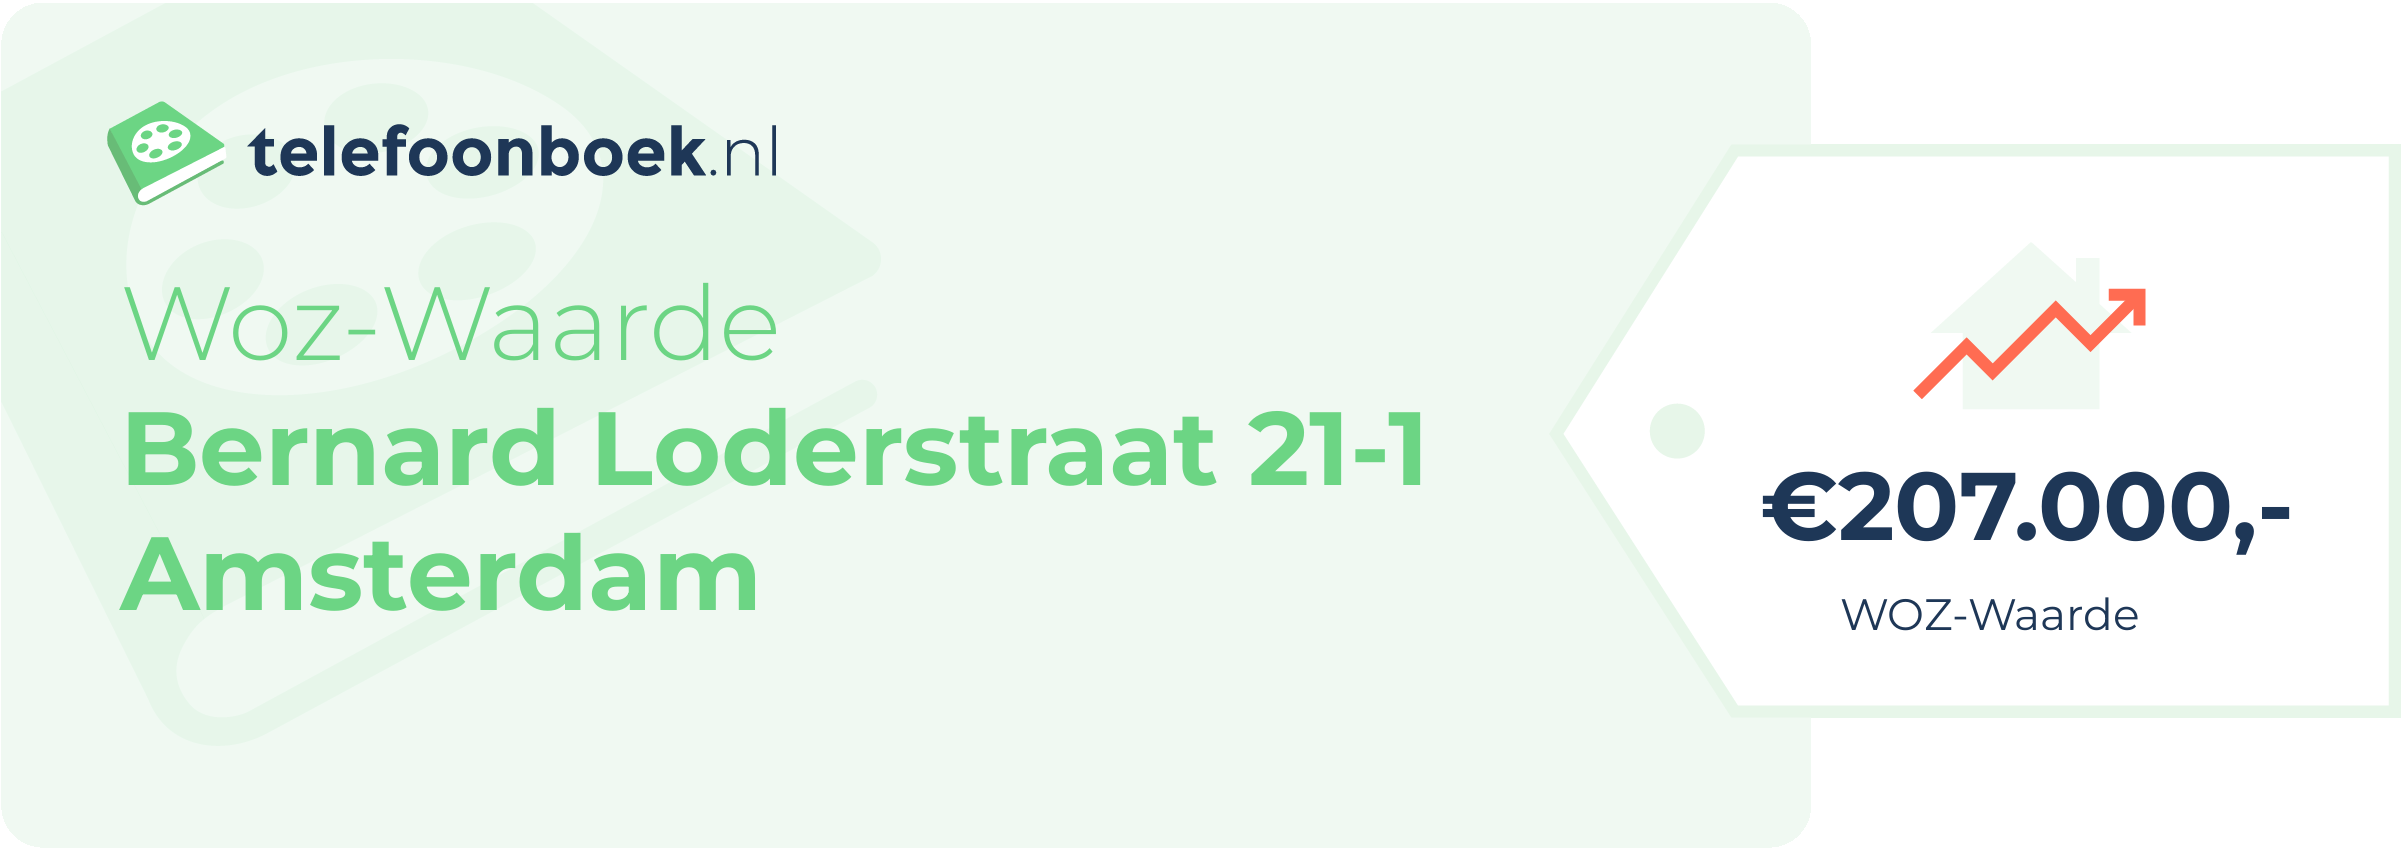 WOZ-waarde Bernard Loderstraat 21-1 Amsterdam